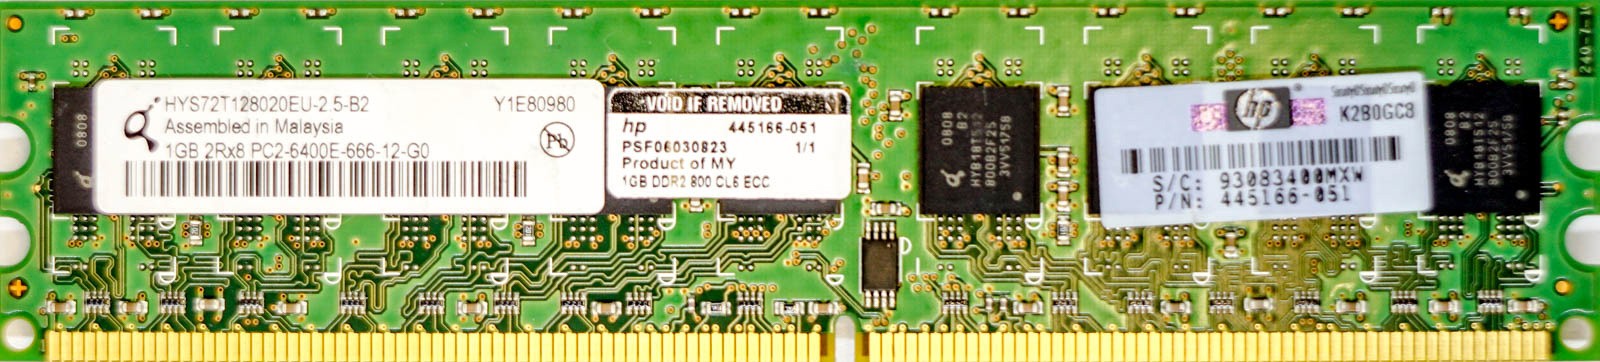 HP (445166-051) - 1GB PC2-6400E (DDR2-800Mhz, 2RX8)